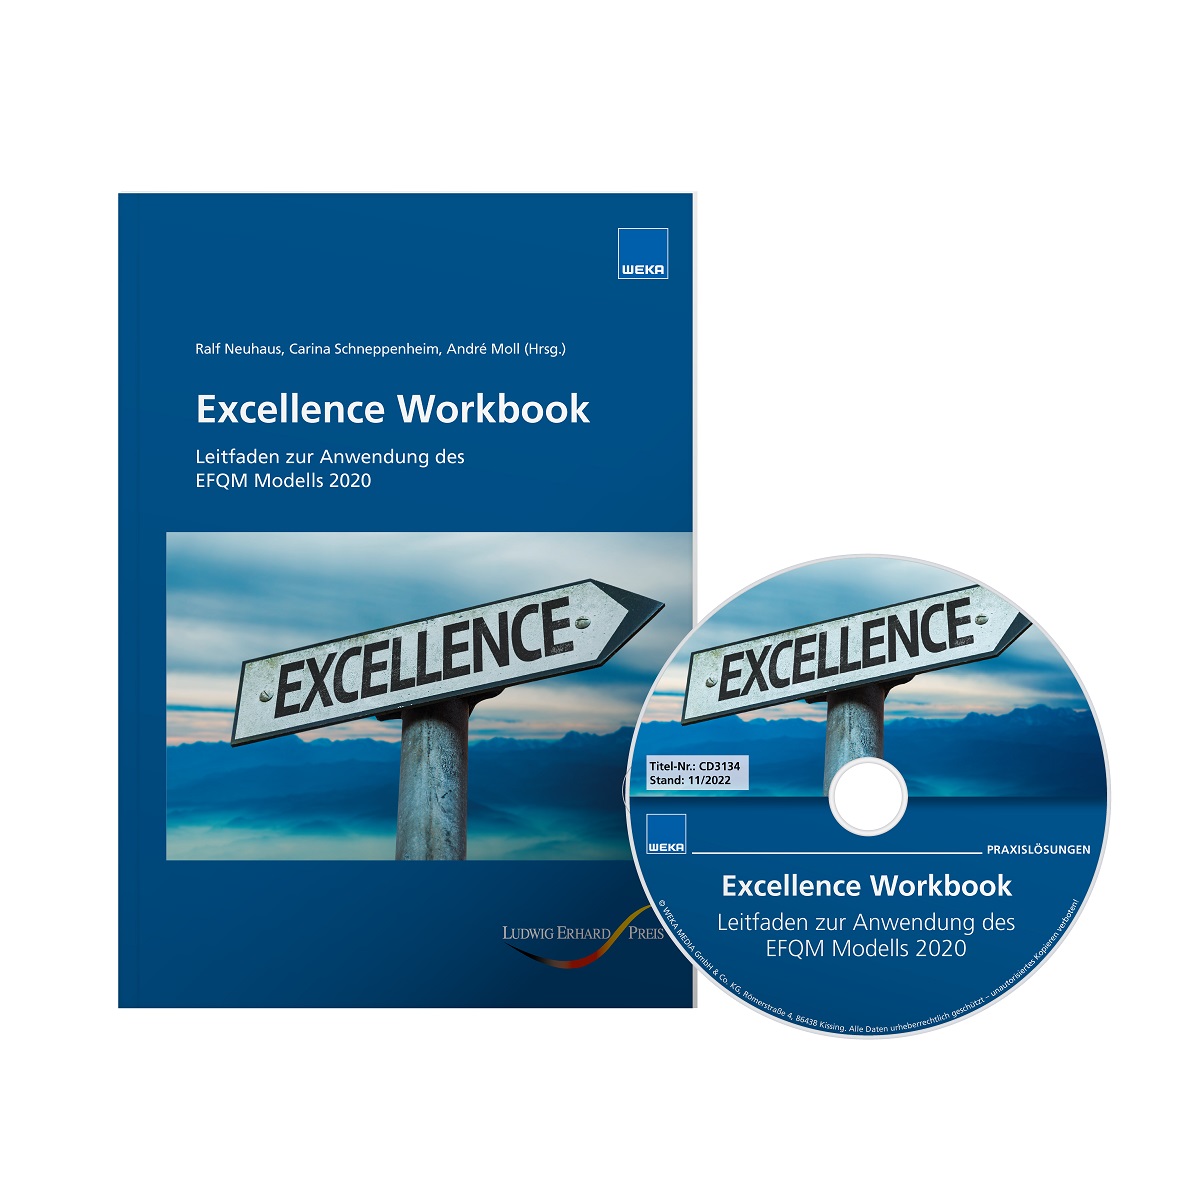 Das Excellence Workbook: ein Lehr-, Lern- und Arbeitsbuch zur Anwendung des EFQM Modells 2020